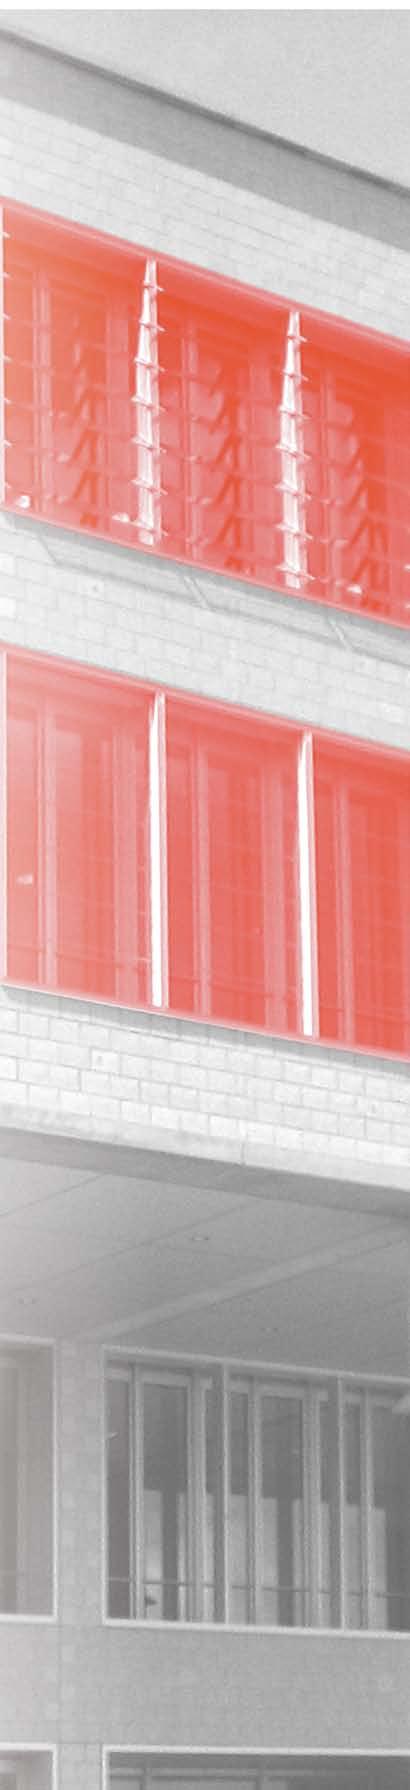 Ausführung Fieger Lamellenfenster werden auf Maß gefertigt. Dabei ist die Klappenanzahl, unter Berücksichtigung der optimalen Klappenhöhe zwischen 170 und 300 mm, frei wählbar.